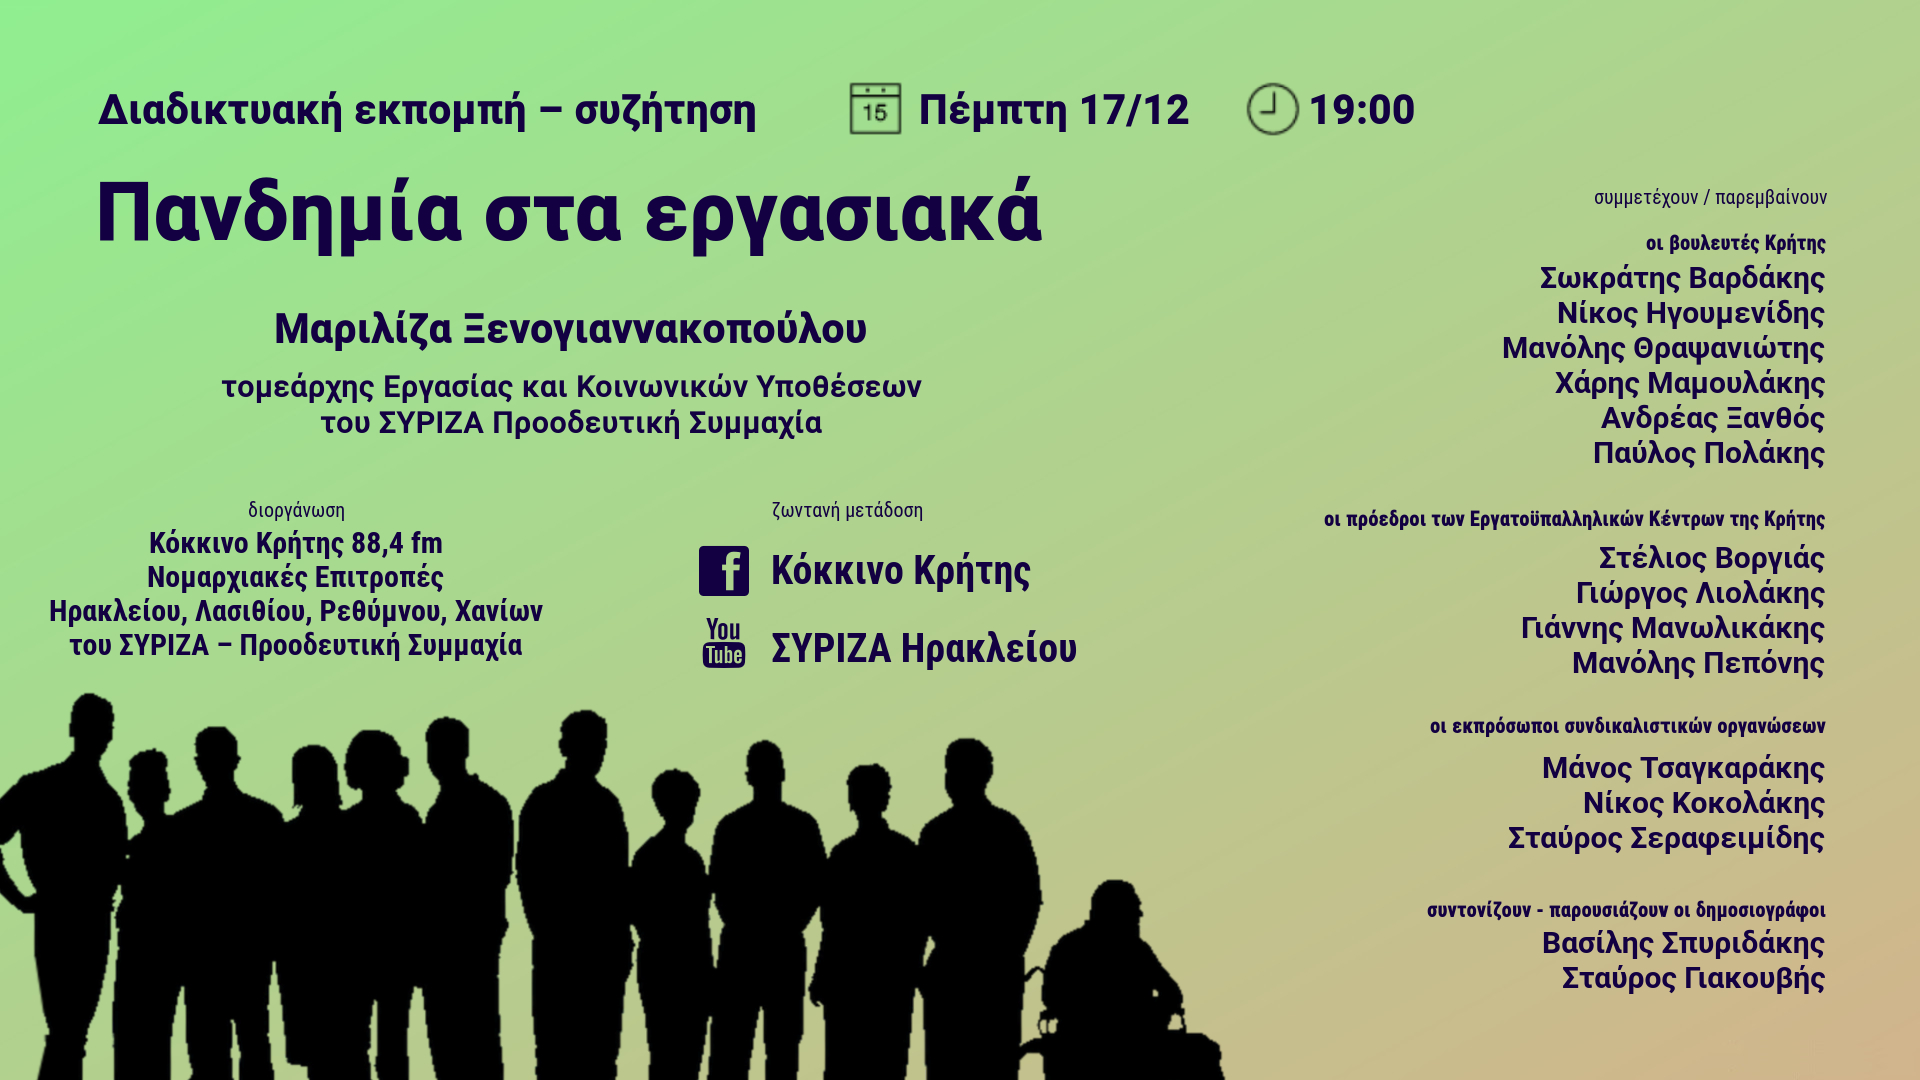 Διαδικτυακή εκπομπή–συζήτησης με Μ. Ξενογιαννακοπούλου και θέμα «ΠαΝΔημία στα εργασιακά»